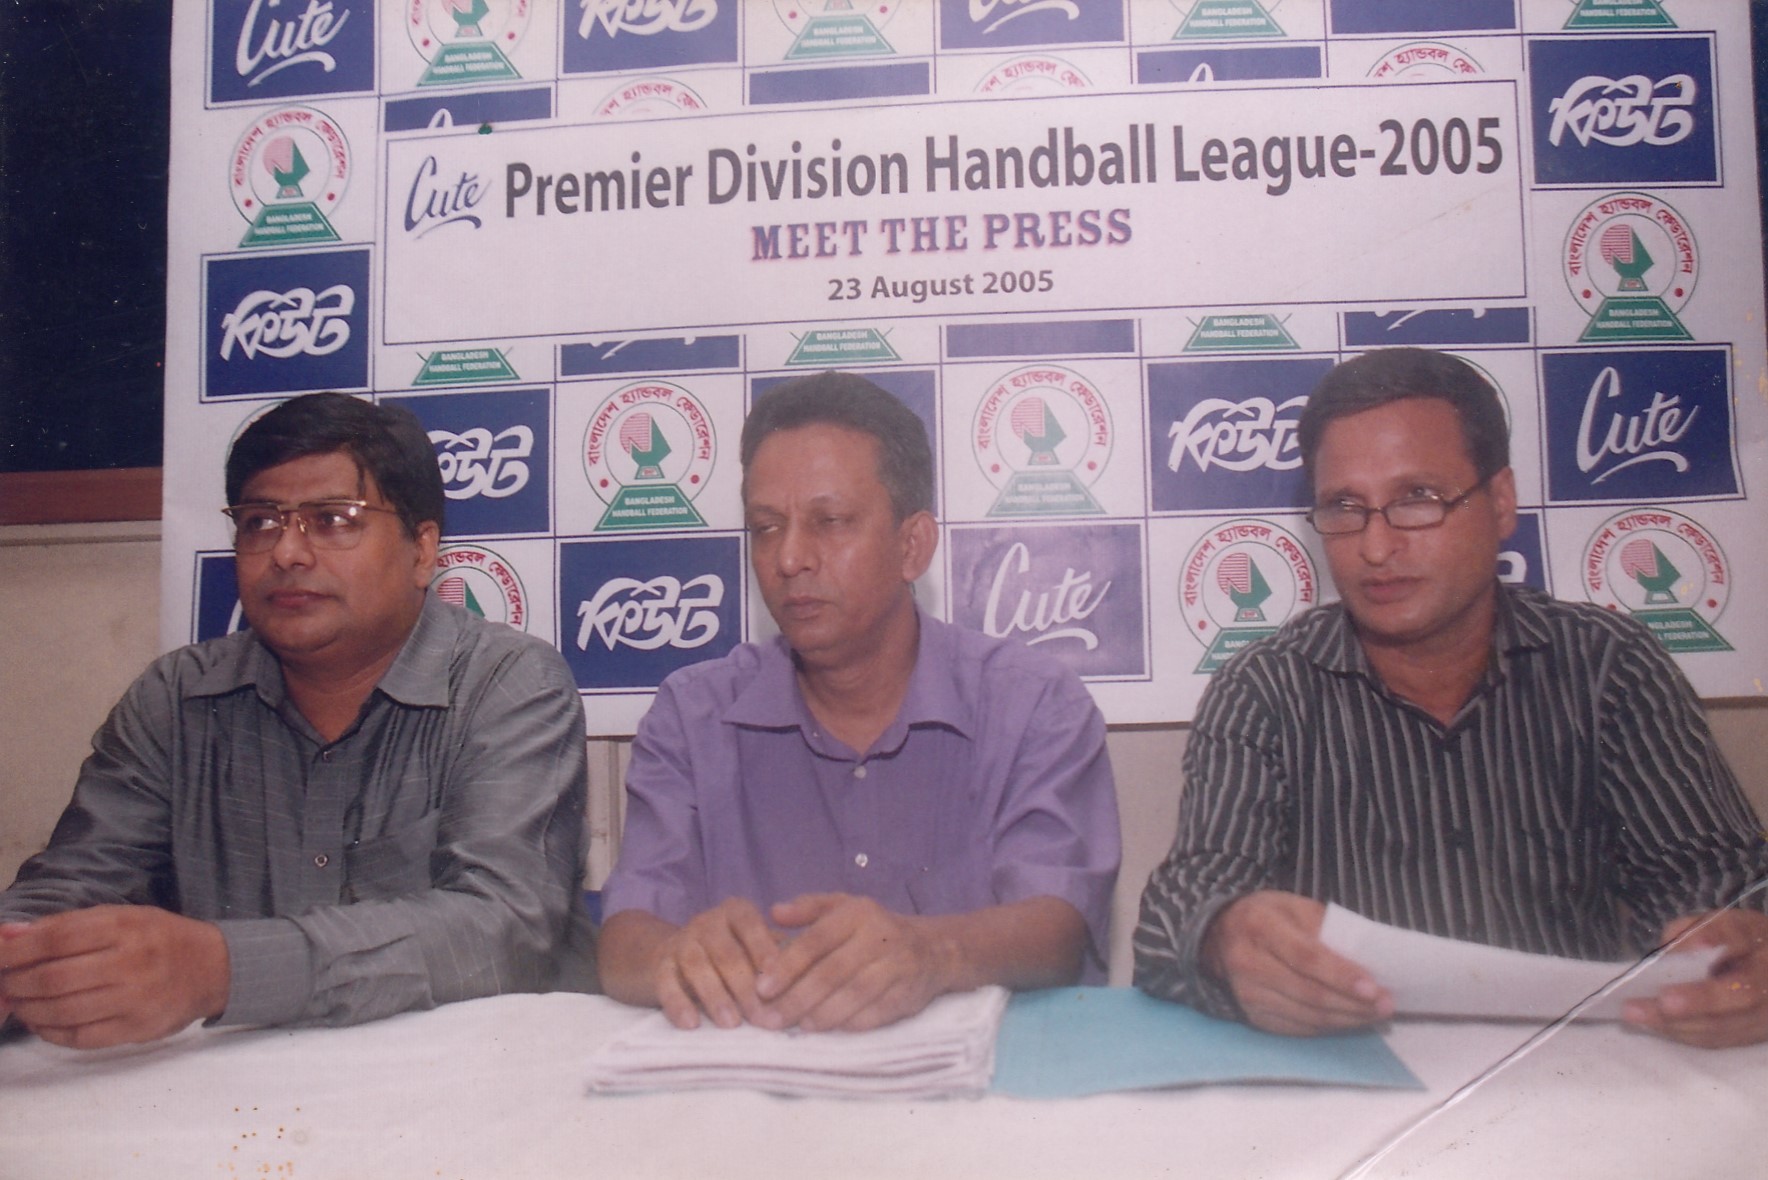 Premier Division Handball League -2005